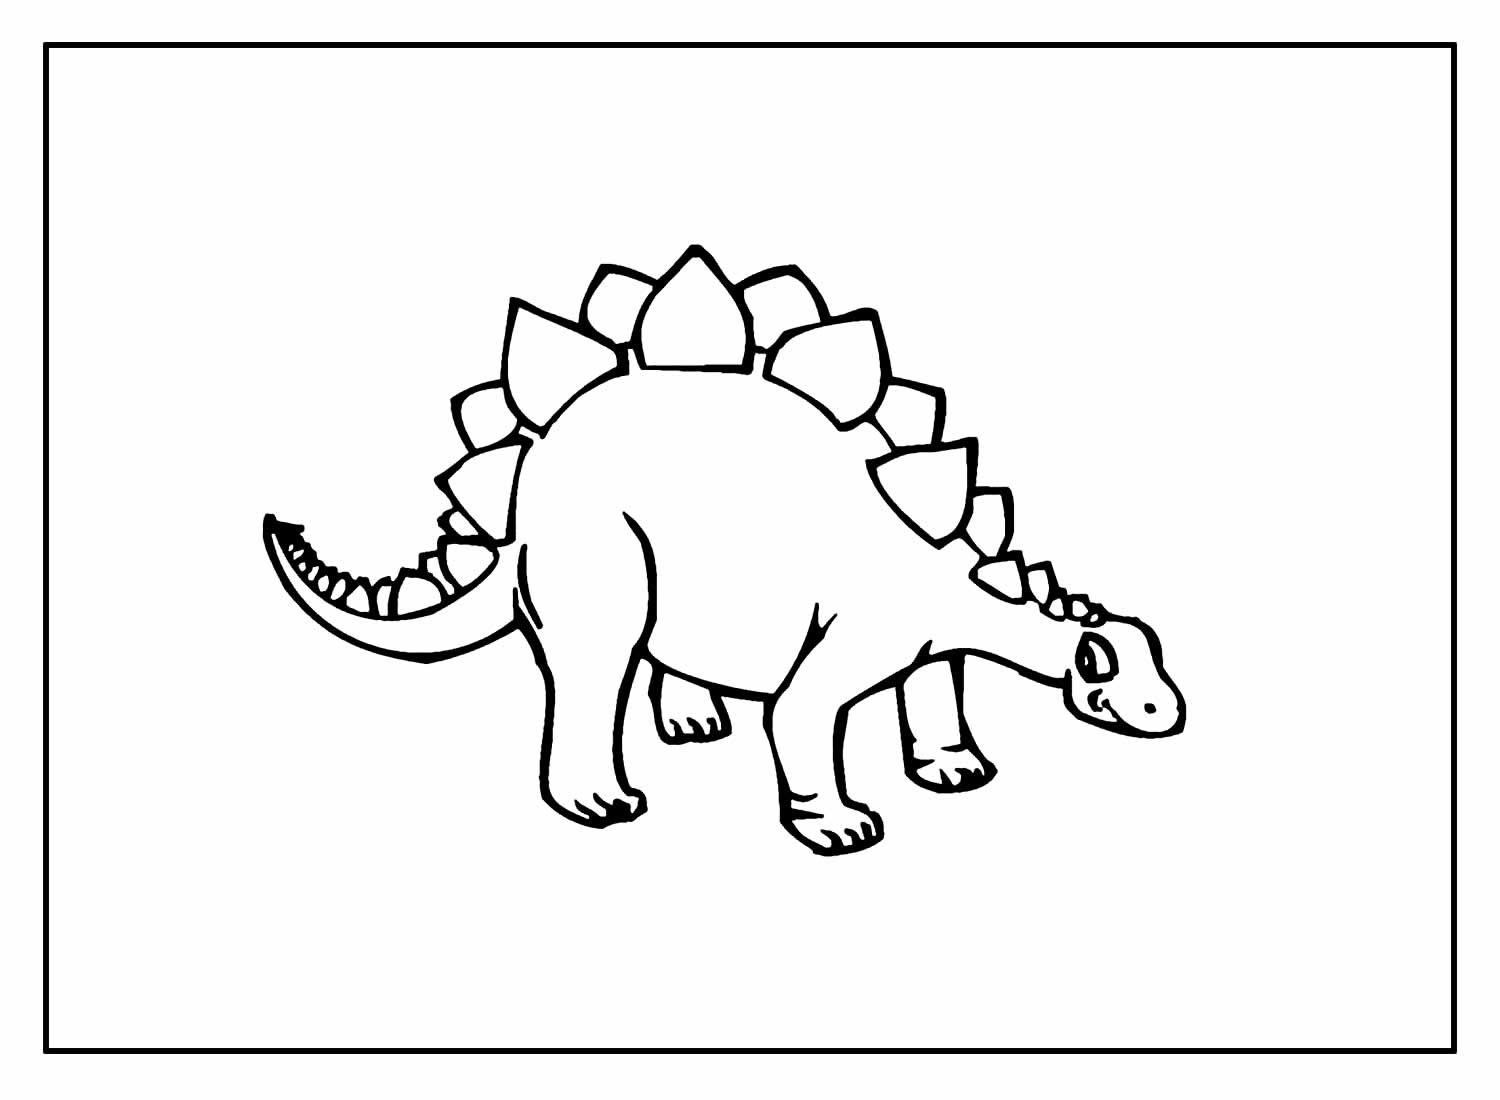 50+ Desenhos de Dinossauros para pintar e colorir - Pop Lembrancinhas